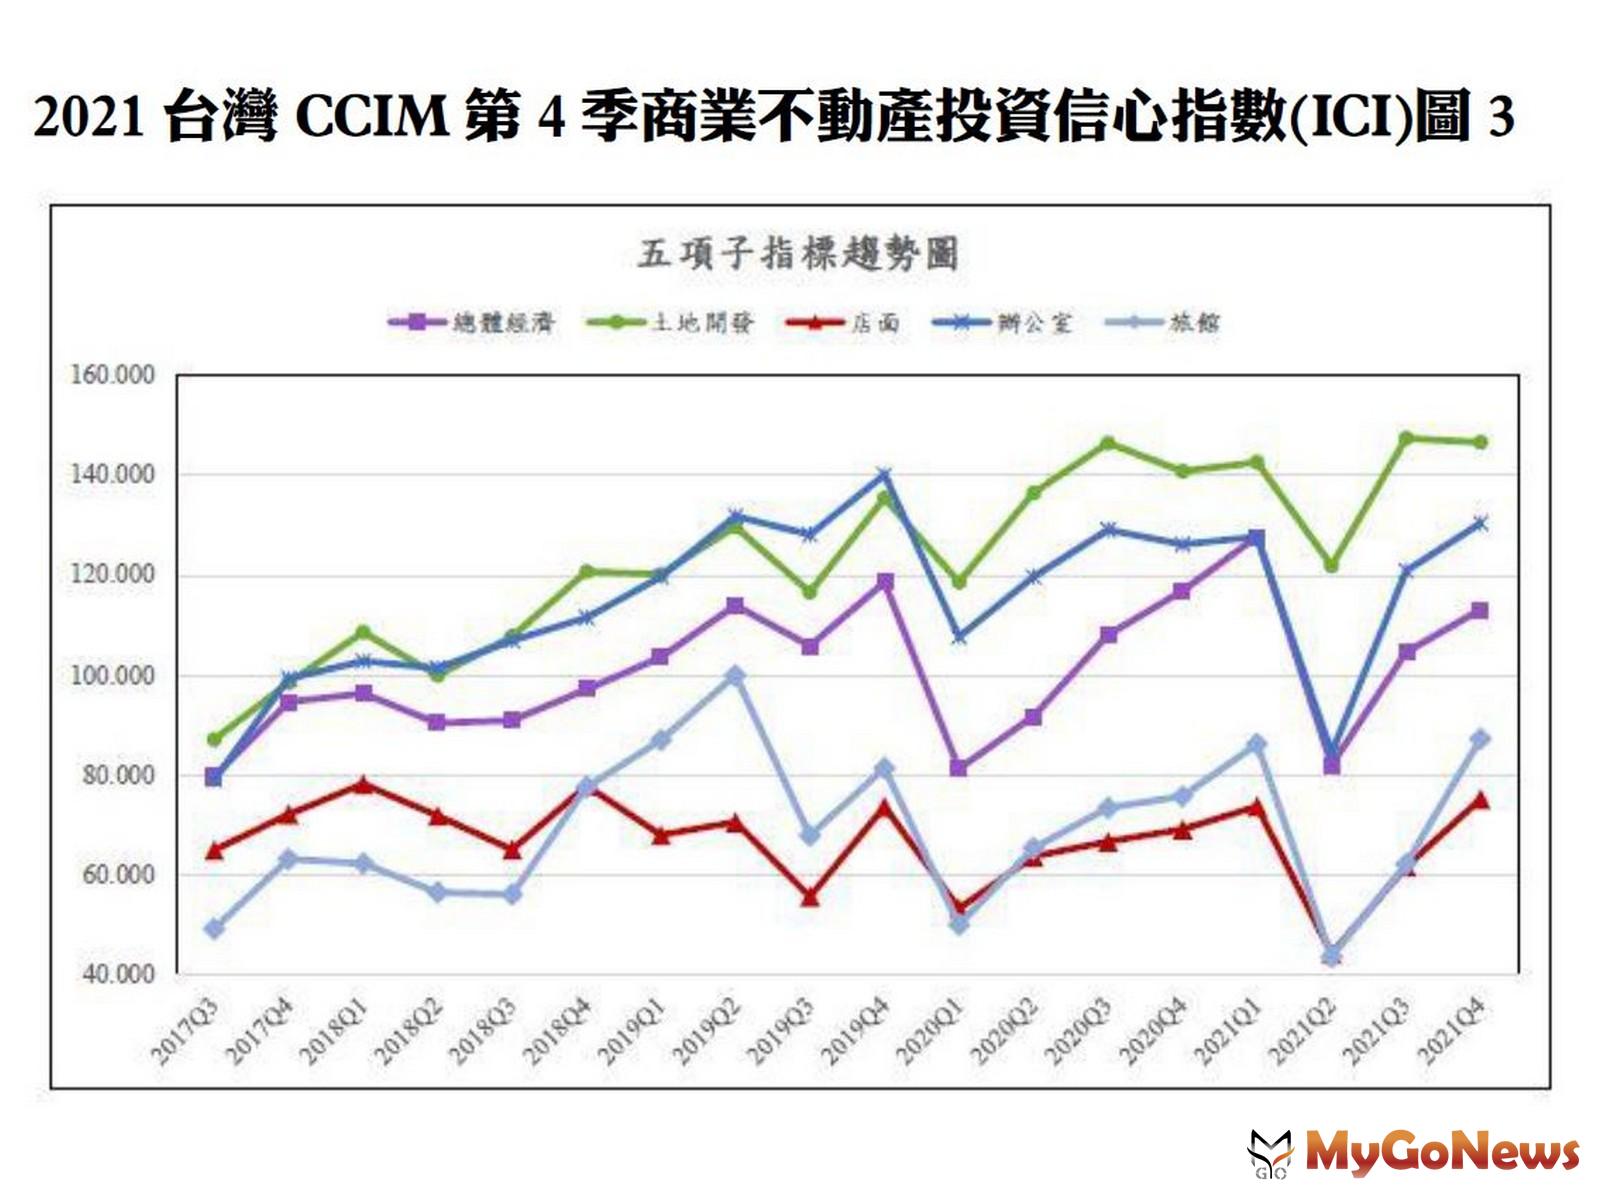 2021台灣CCIM第四季商業不動產投資信心指數(ICI)圖3 MyGoNews房地產新聞 趨勢報導